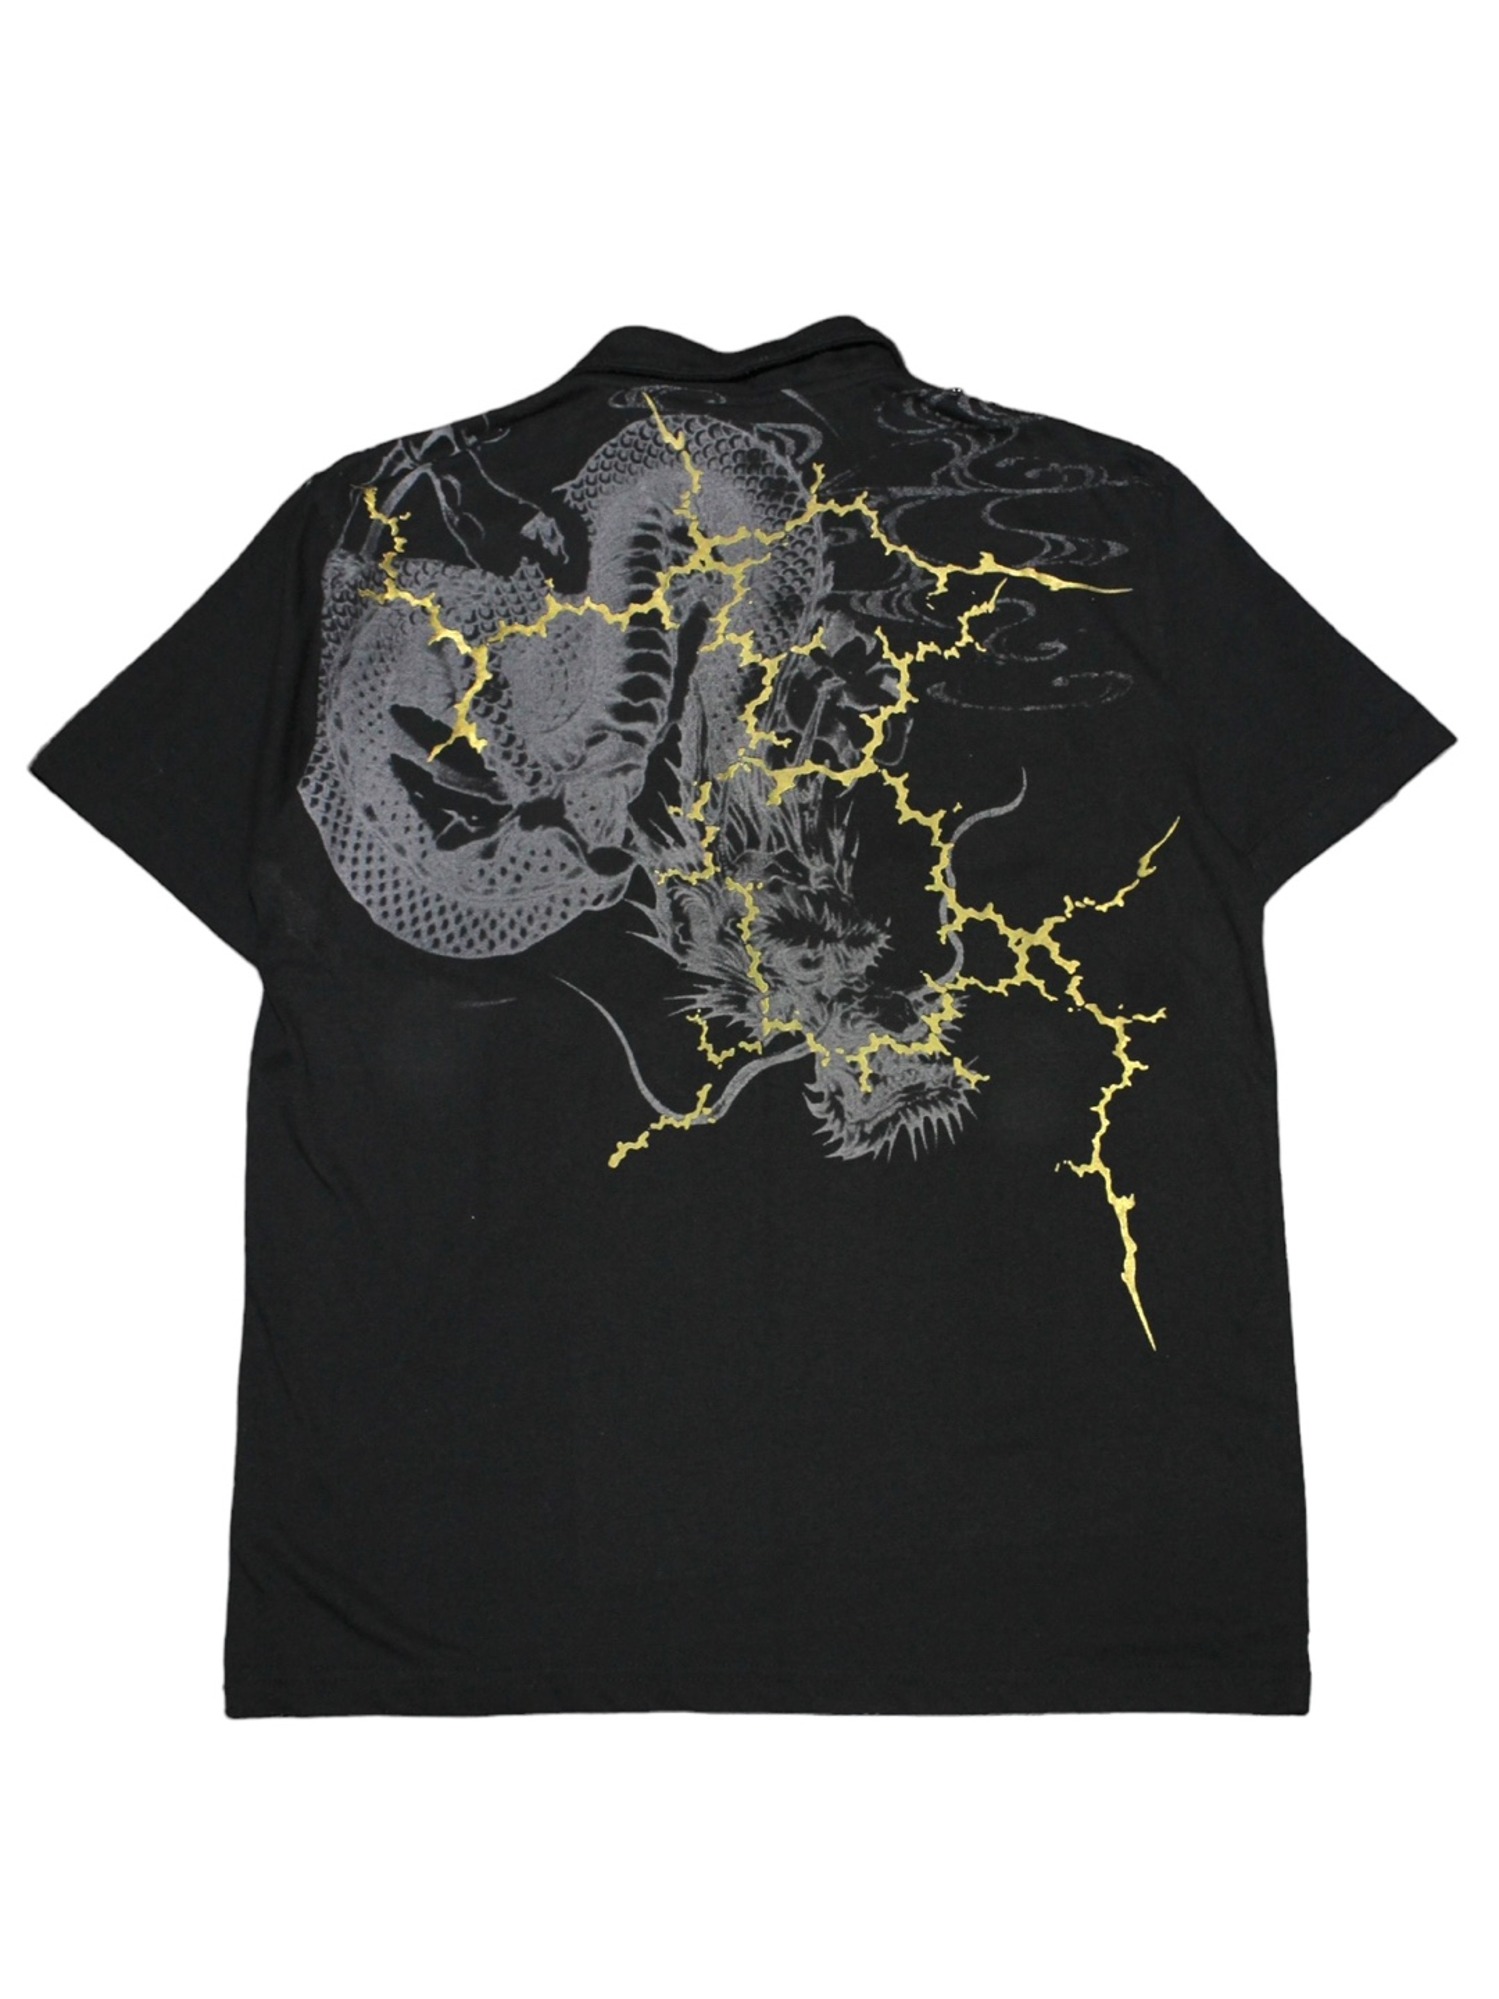 Vintage Dragon X Lightning Big Printing collared Half T-Shirts